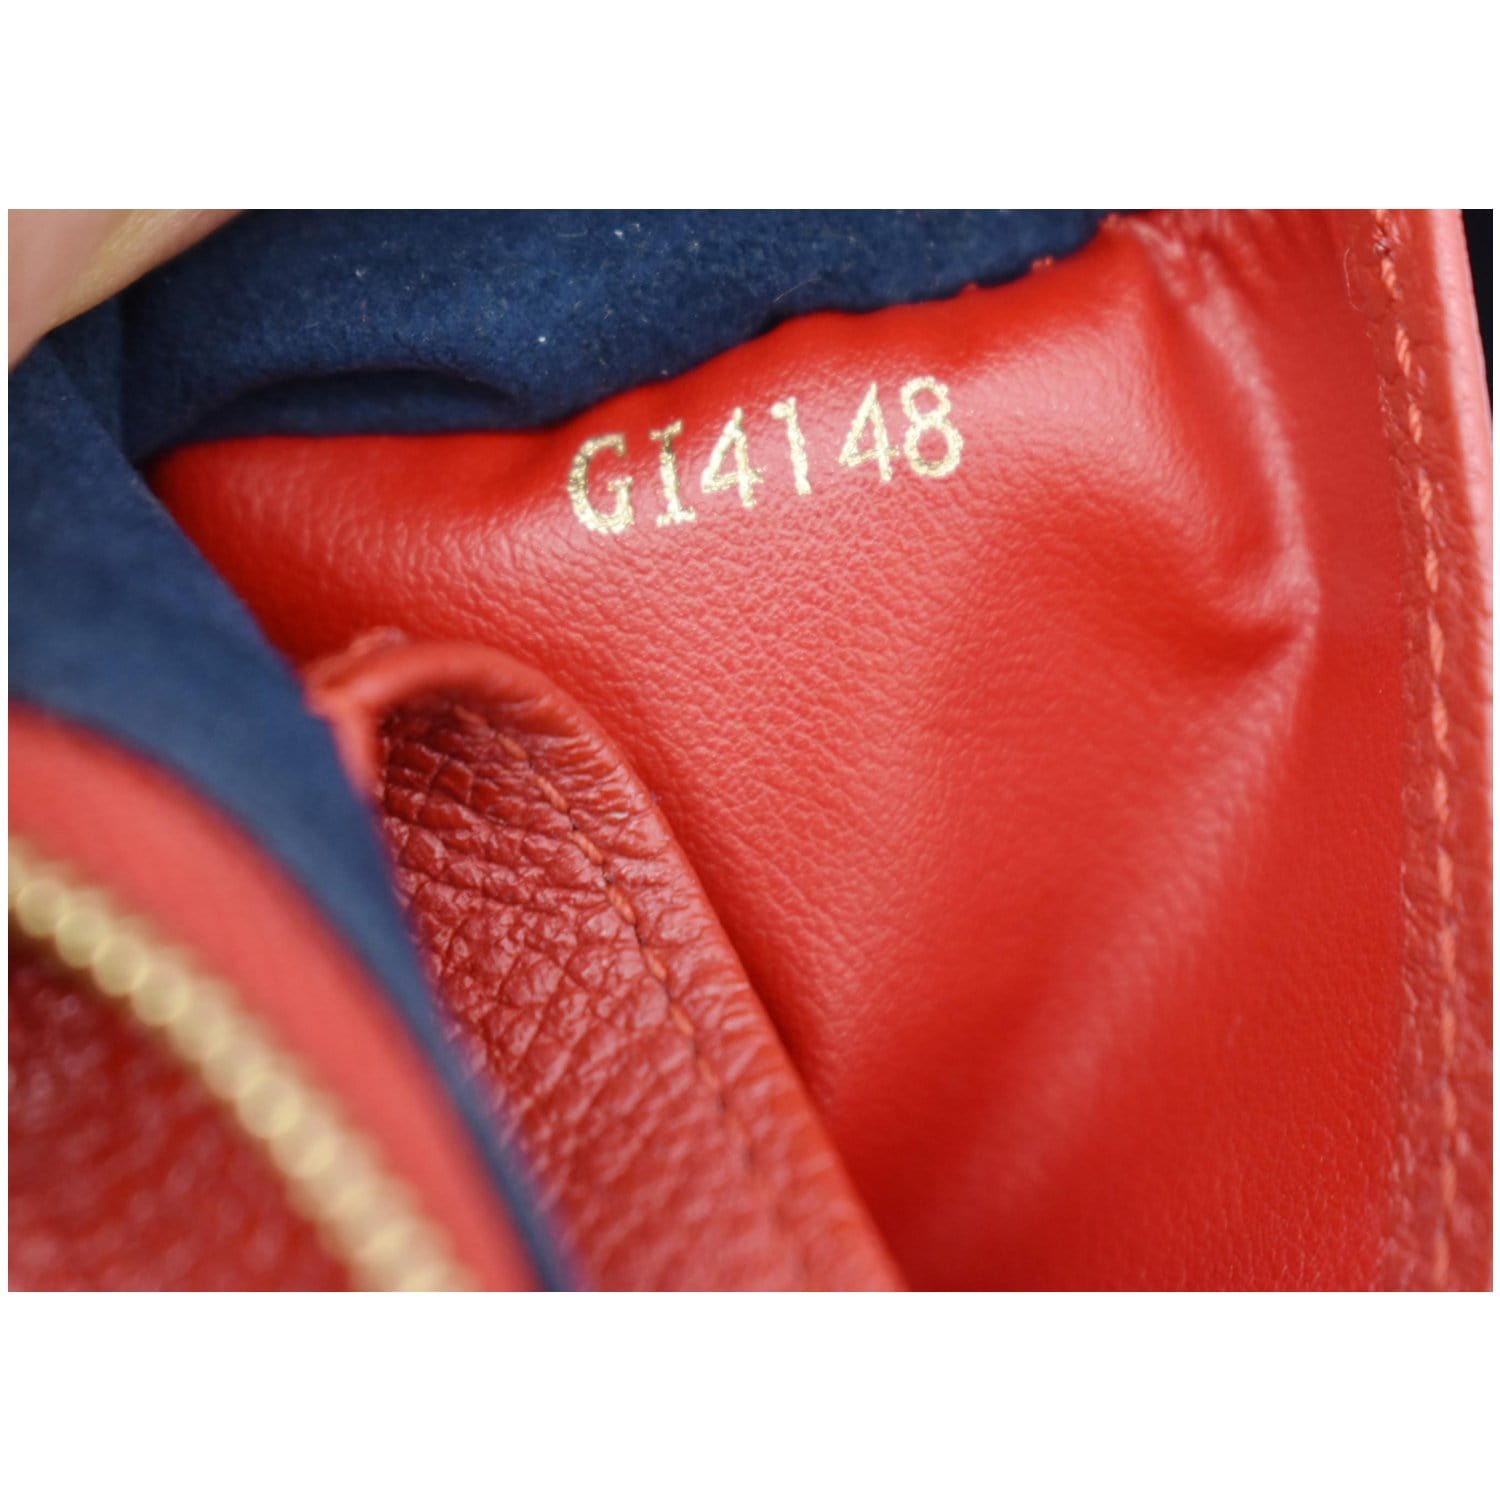 Louis Vuitton Double Zip Pochette Monogram Empreinte Leather - ShopStyle  Clutches